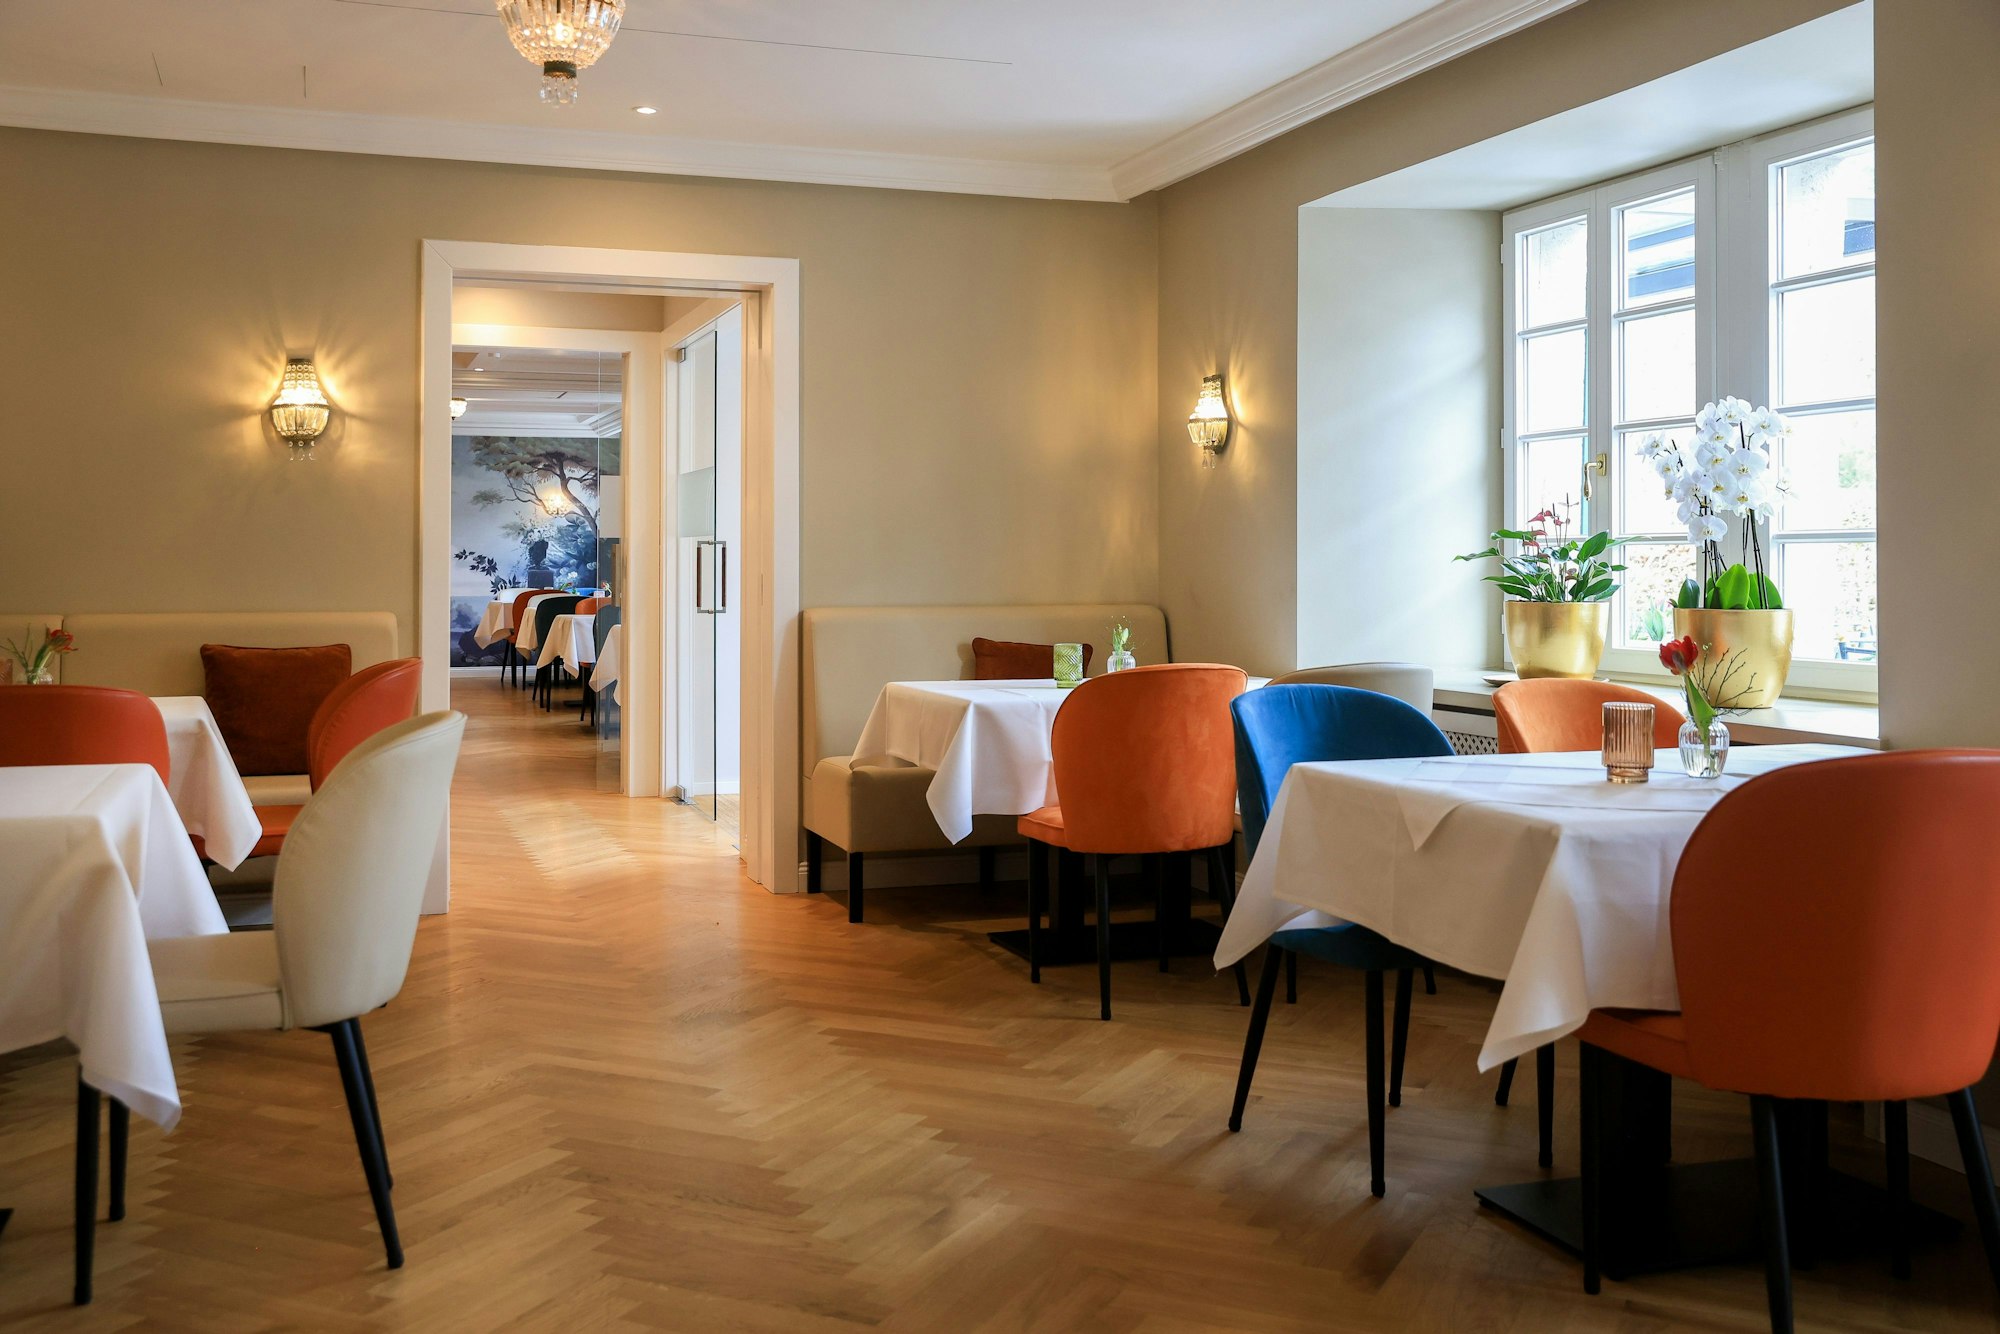 Das Restaurant von innen, die Tische sind mit weißen Tischdecken bedeckt und die Stühle in bunten Farben mit Samt bezogen